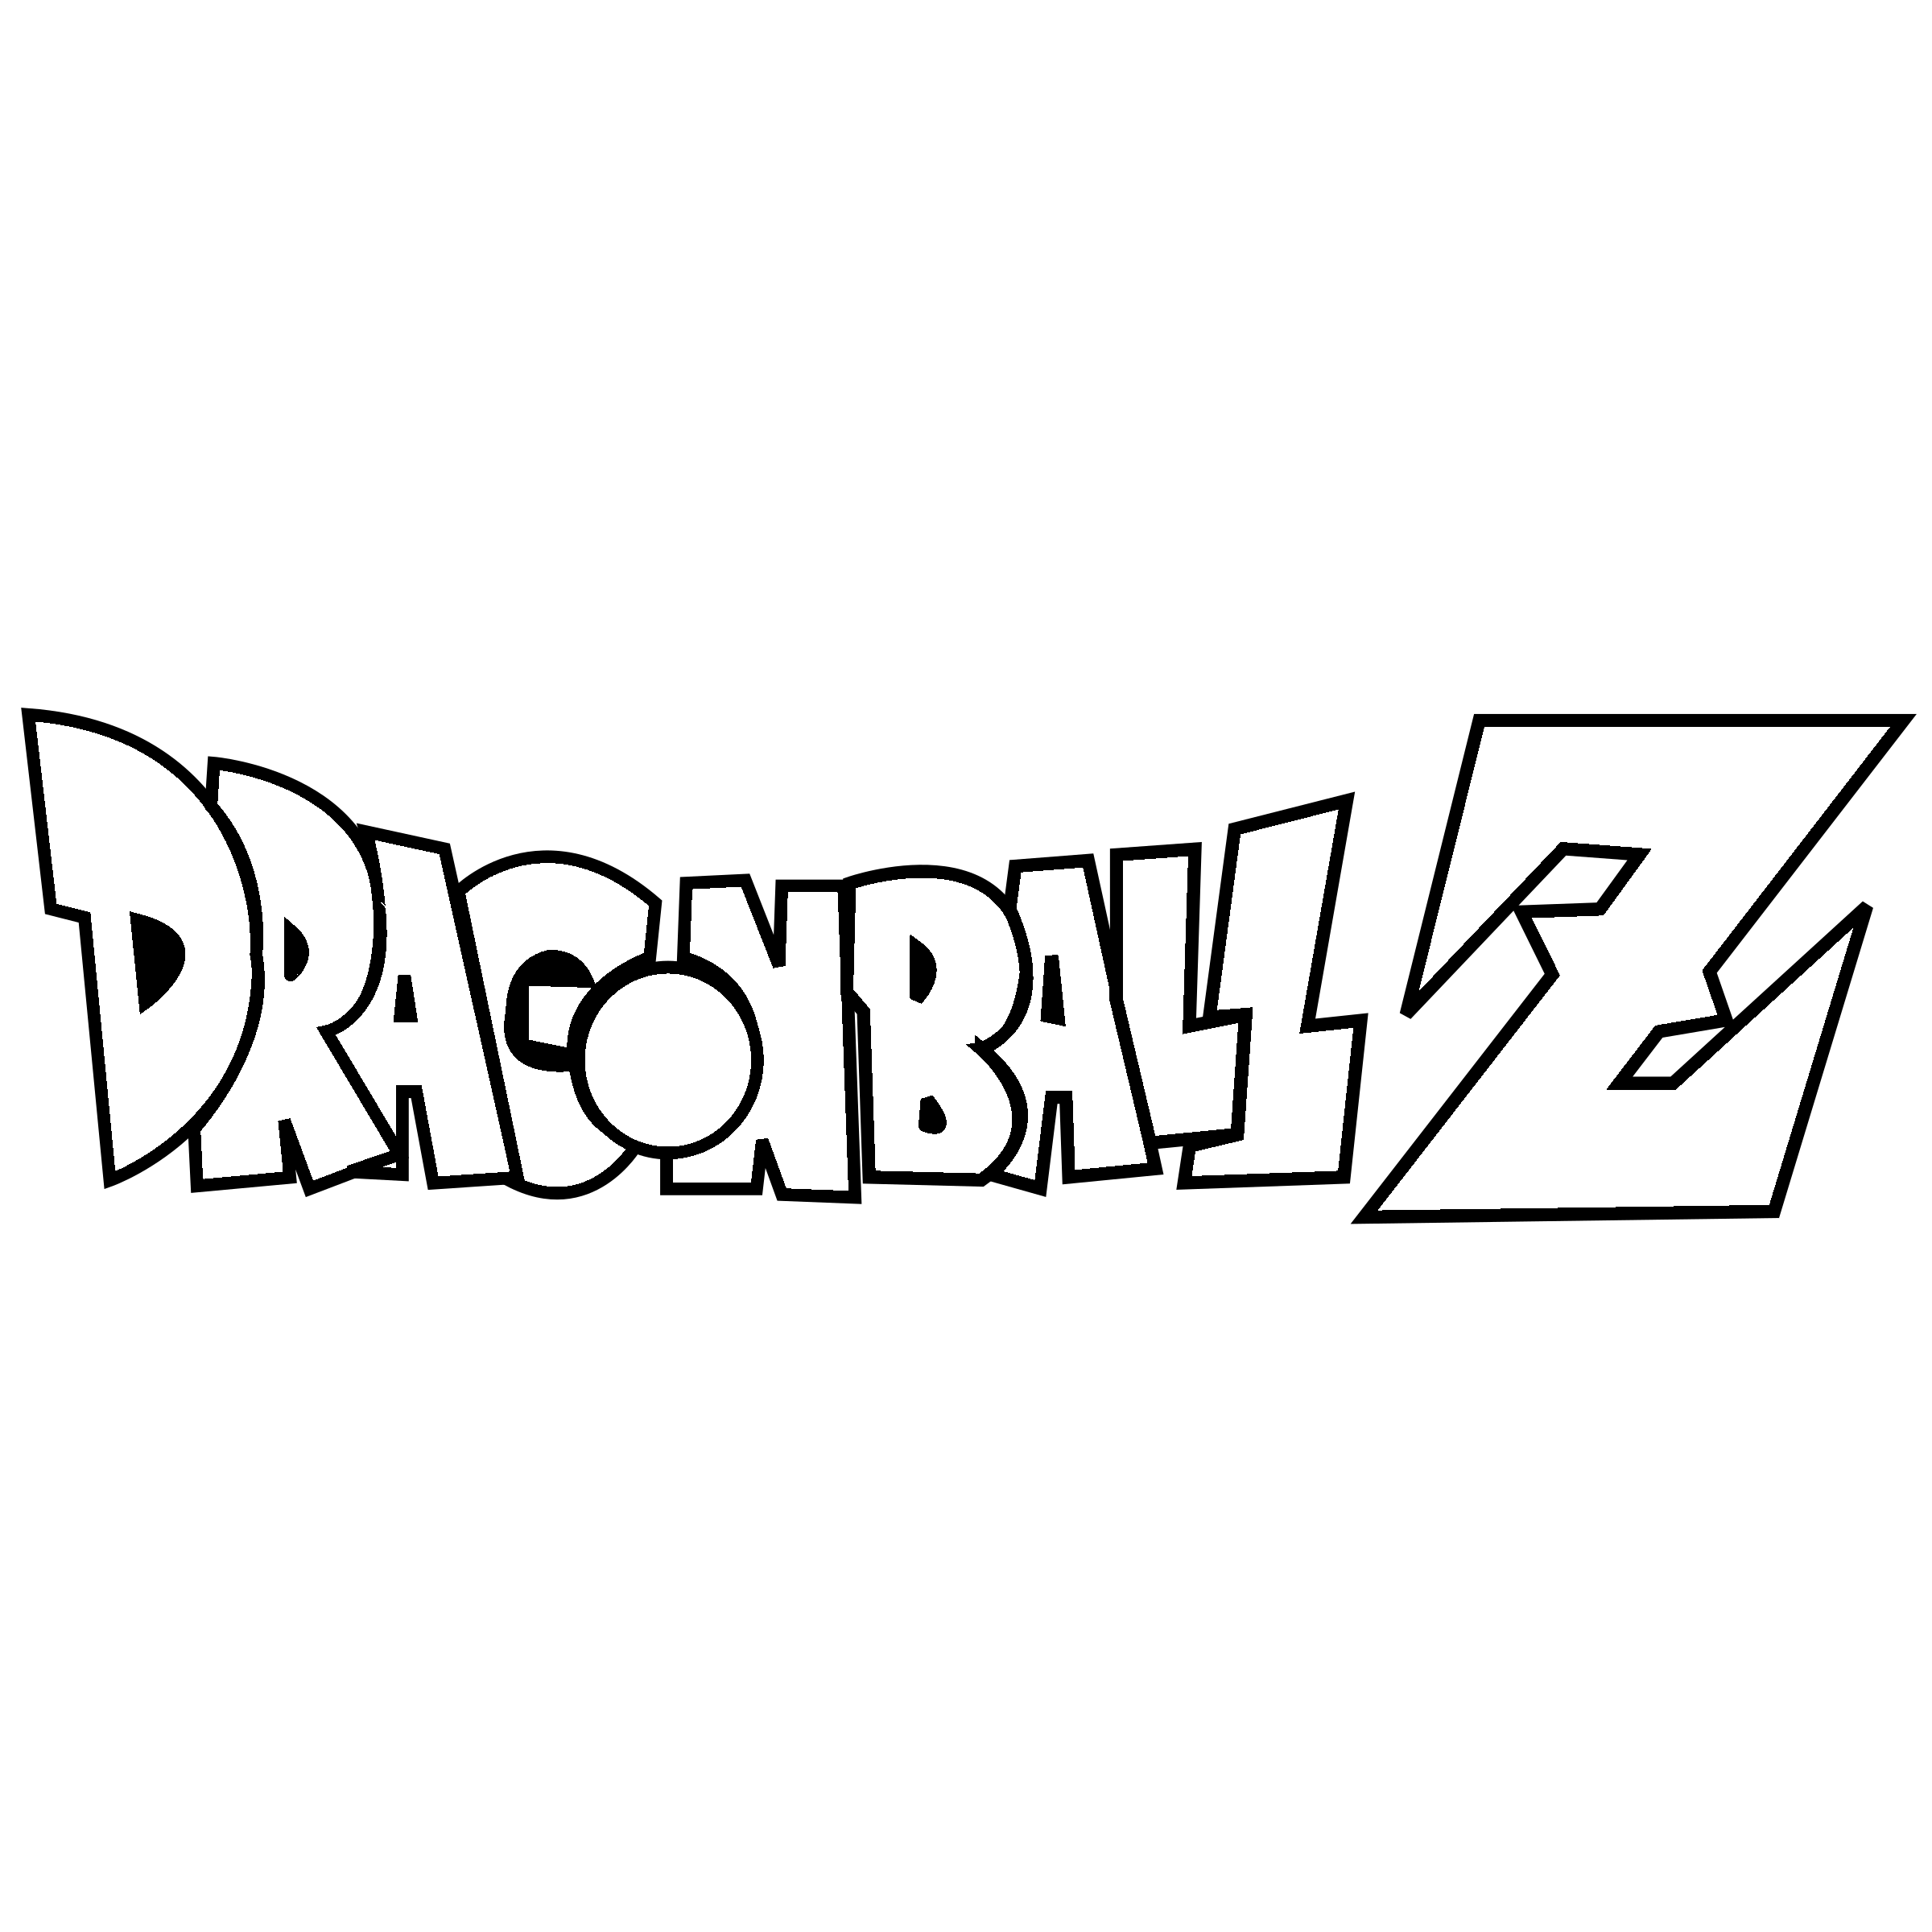 Dragon Ball Z Logo Vector at Vectorified.com | Collection of Dragon Ball Z Logo Vector free for ...